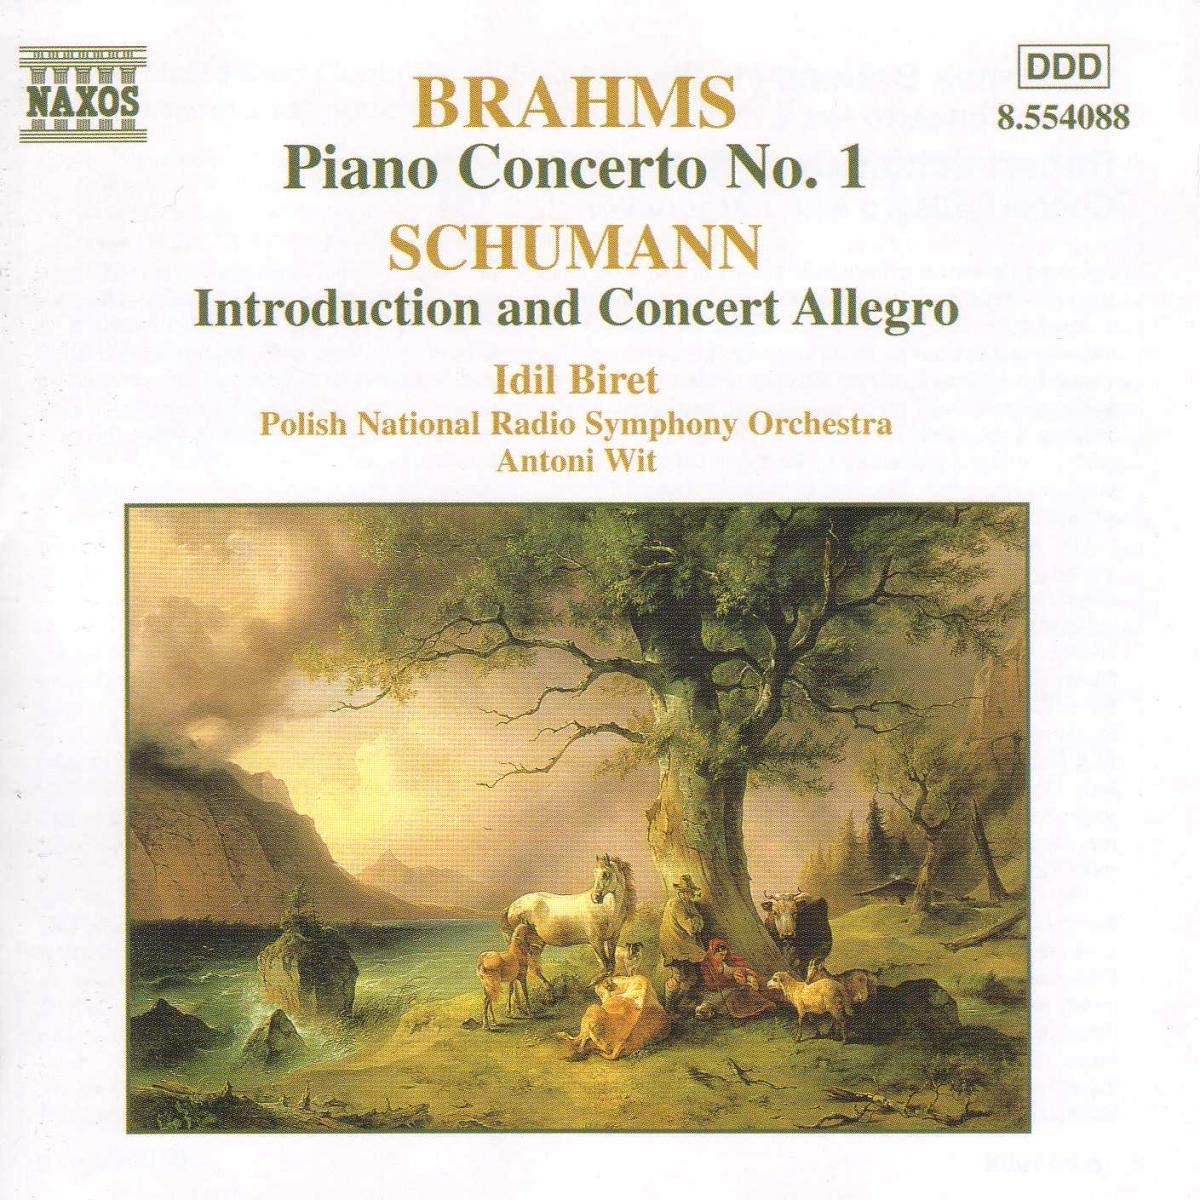 BRAHMS: Piano Concerto no. 2